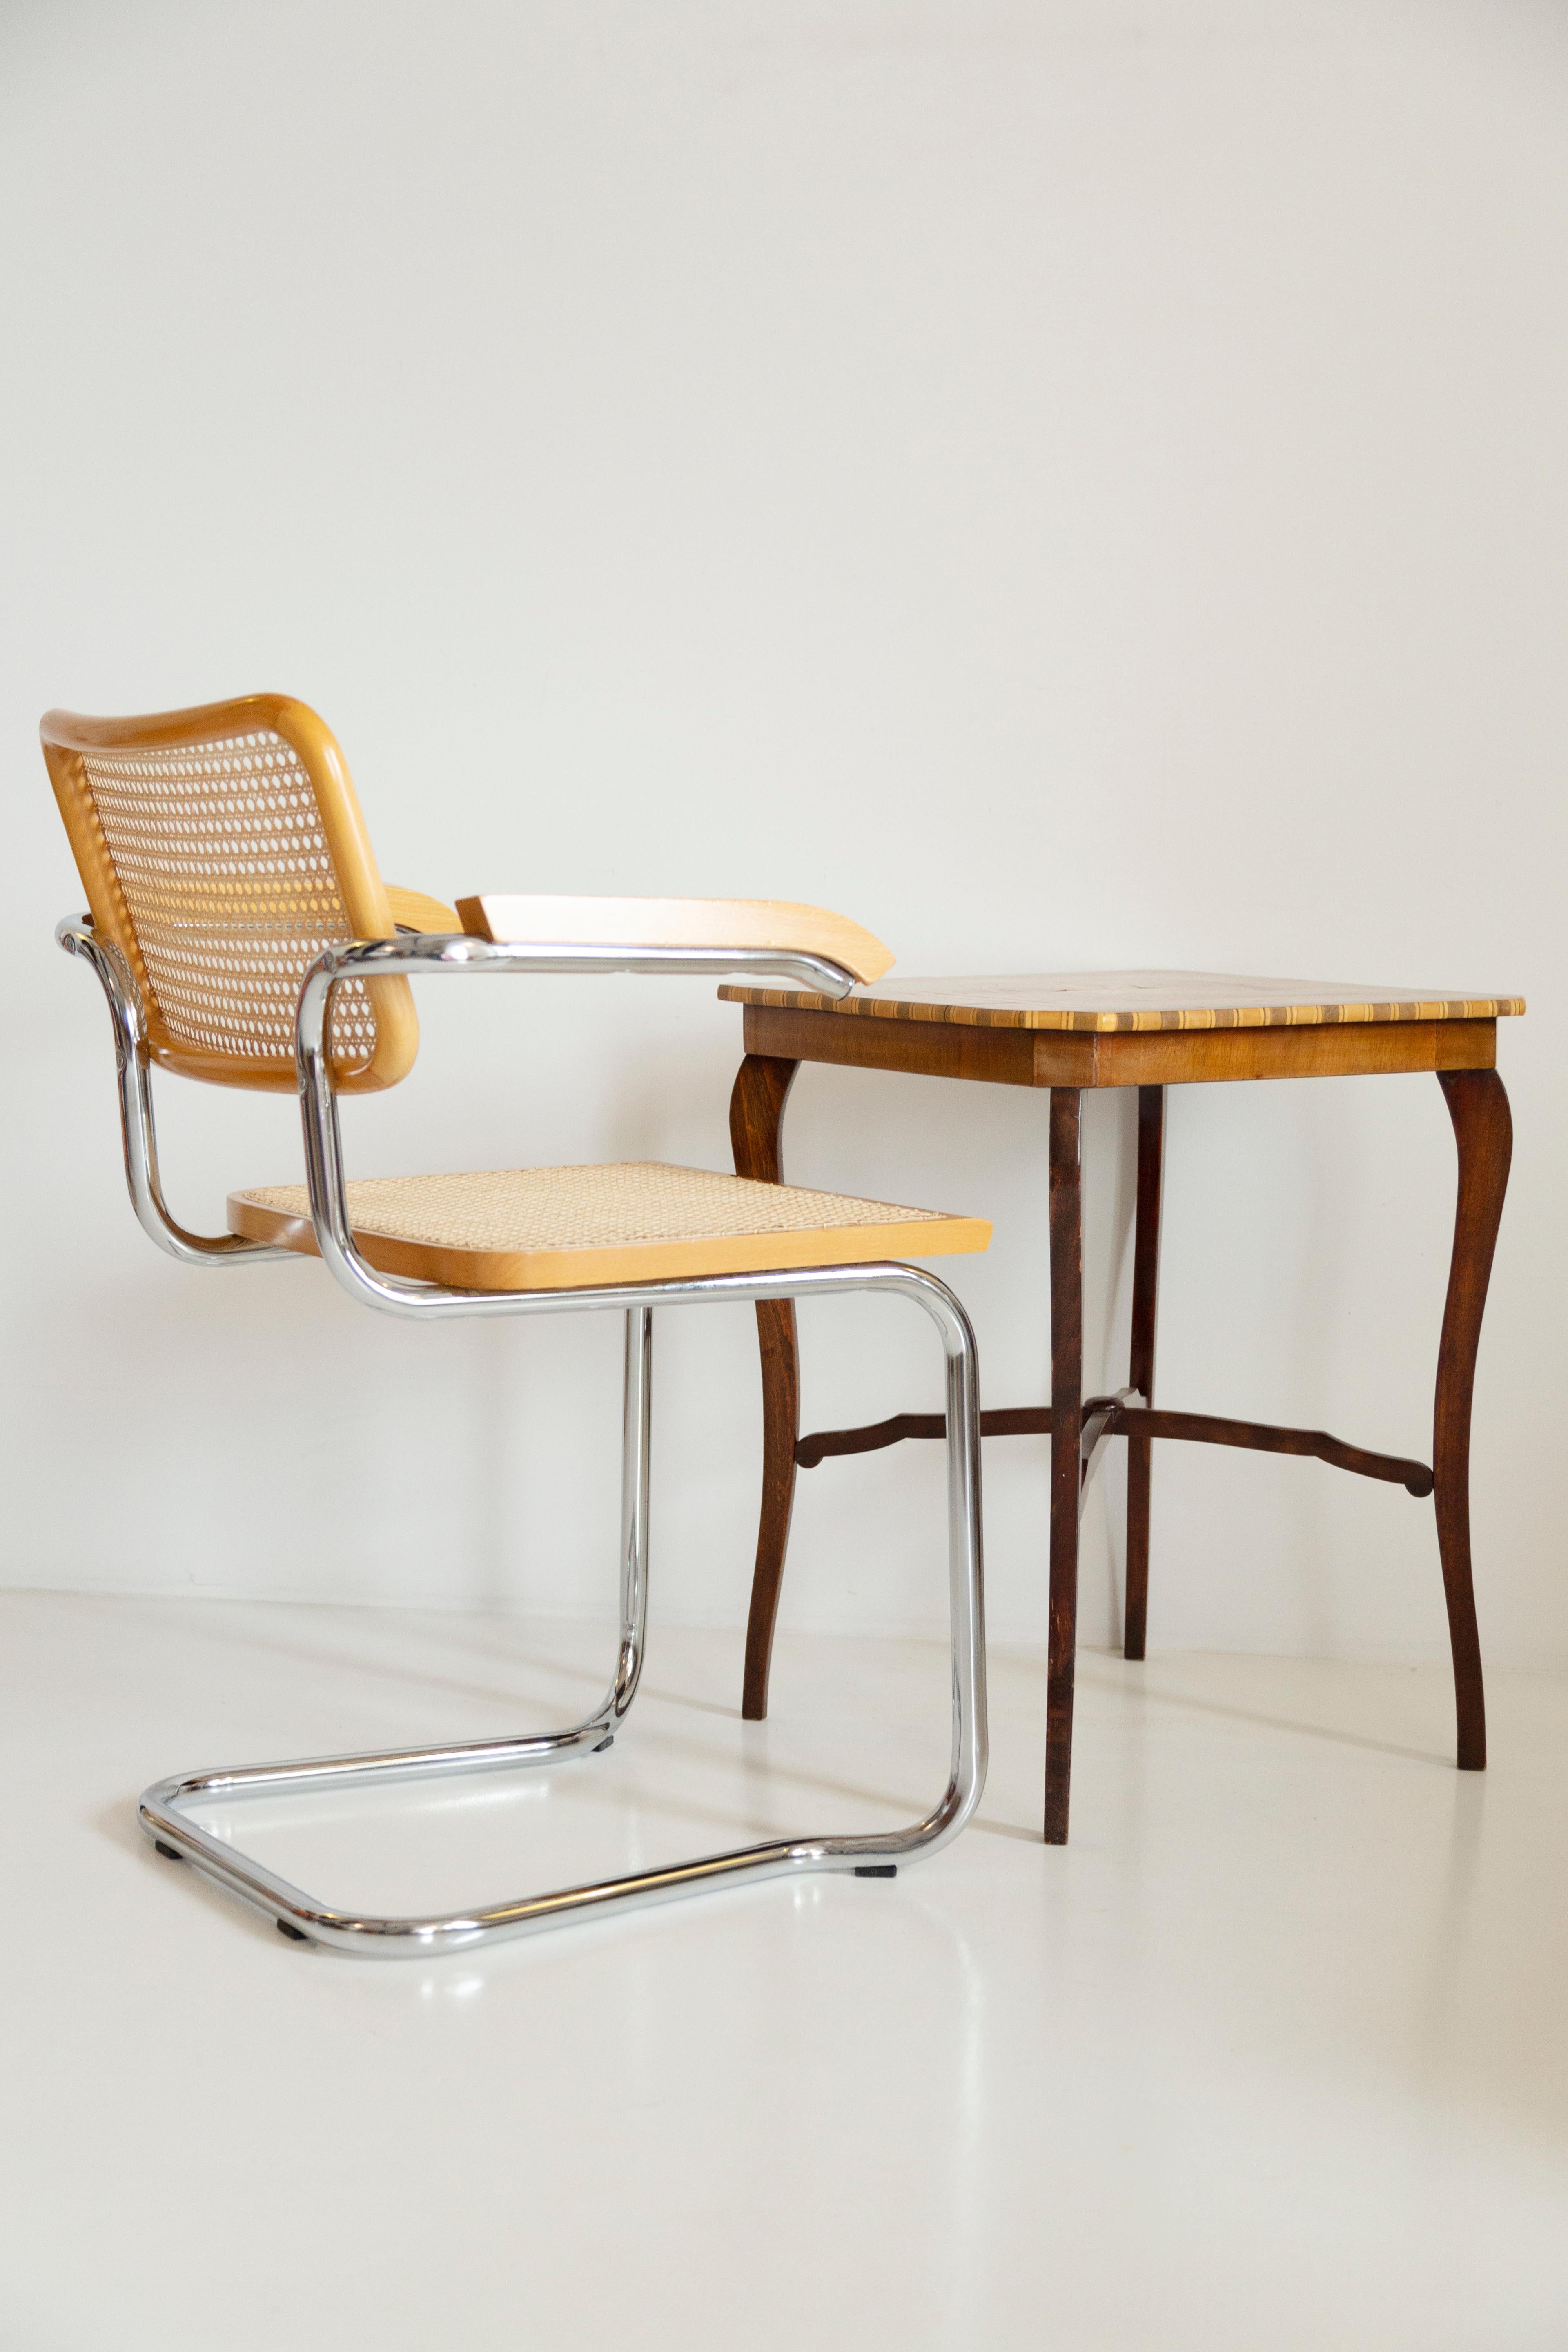 Magnifique chaise du milieu du siècle en rotin, velours et bois. 

La merveilleuse et mondialement célèbre chaise Cesca, conçue dans les années 1920 par Marcel Breuer. La chaise Cesca est produite, entre autres, par des entreprises telles que Thonet